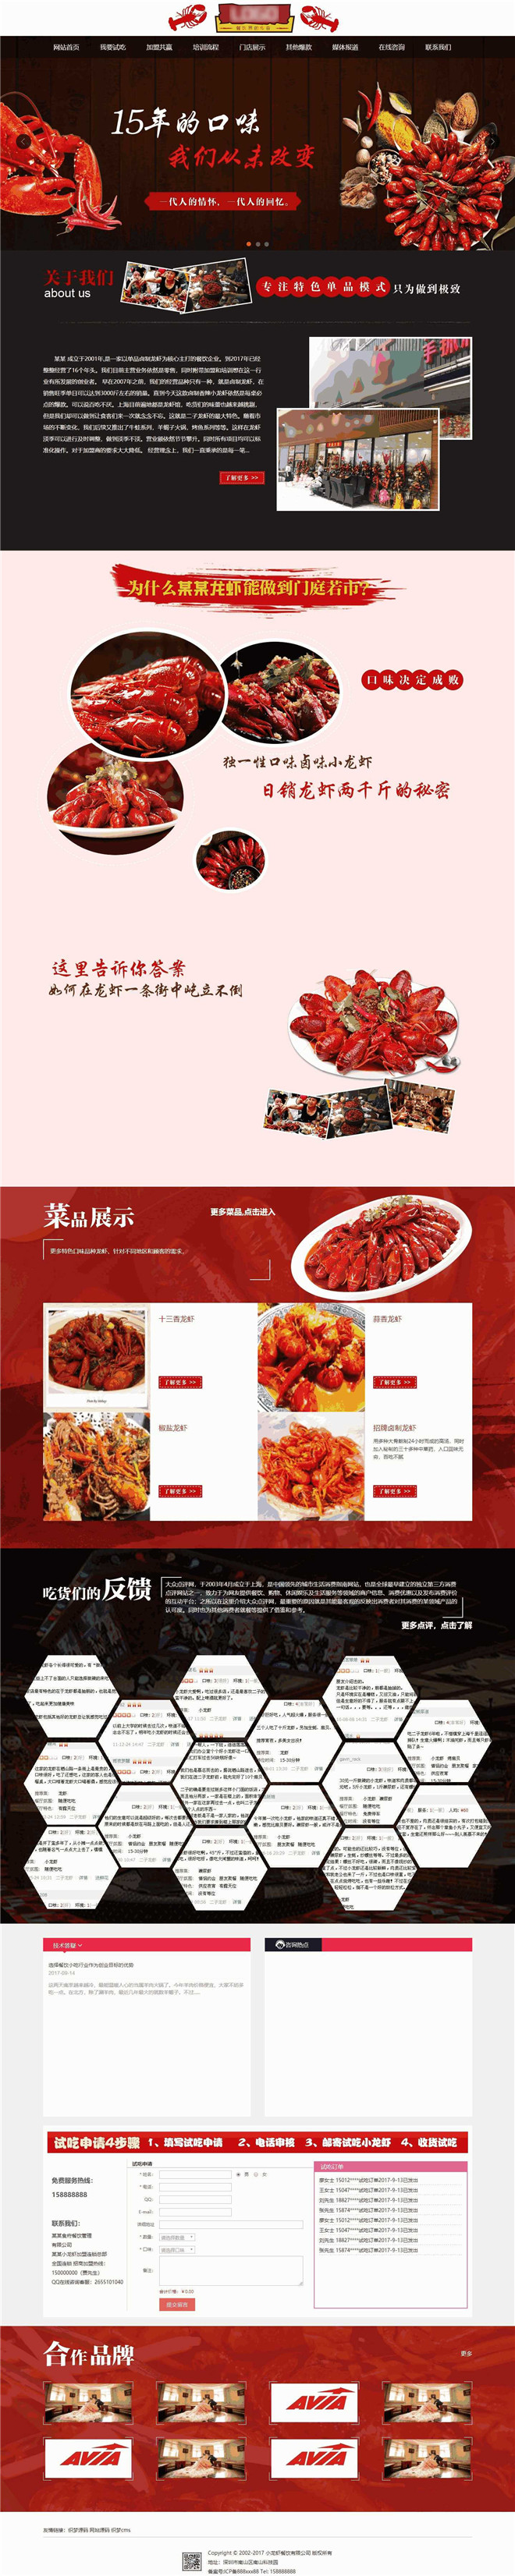 麻辣小龙虾加盟餐饮管理公司企业类网站制作_网站建设模板演示图